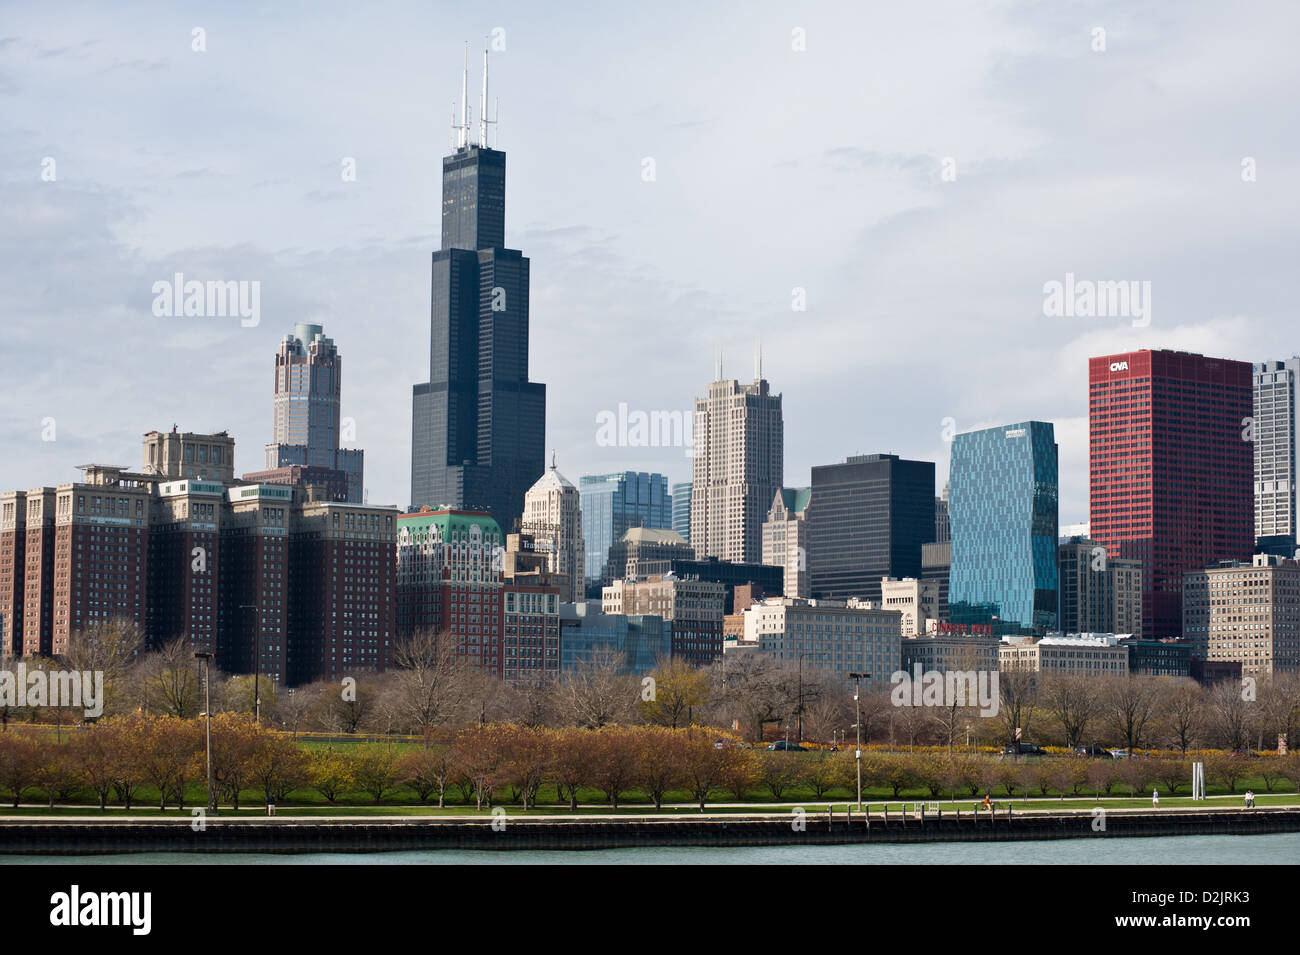 Die Skyline von Chicago, einschließlich der Willis Tower, wie vom Seeufer Weg gesehen. MAX HERMANN/ALAMY Stockfoto